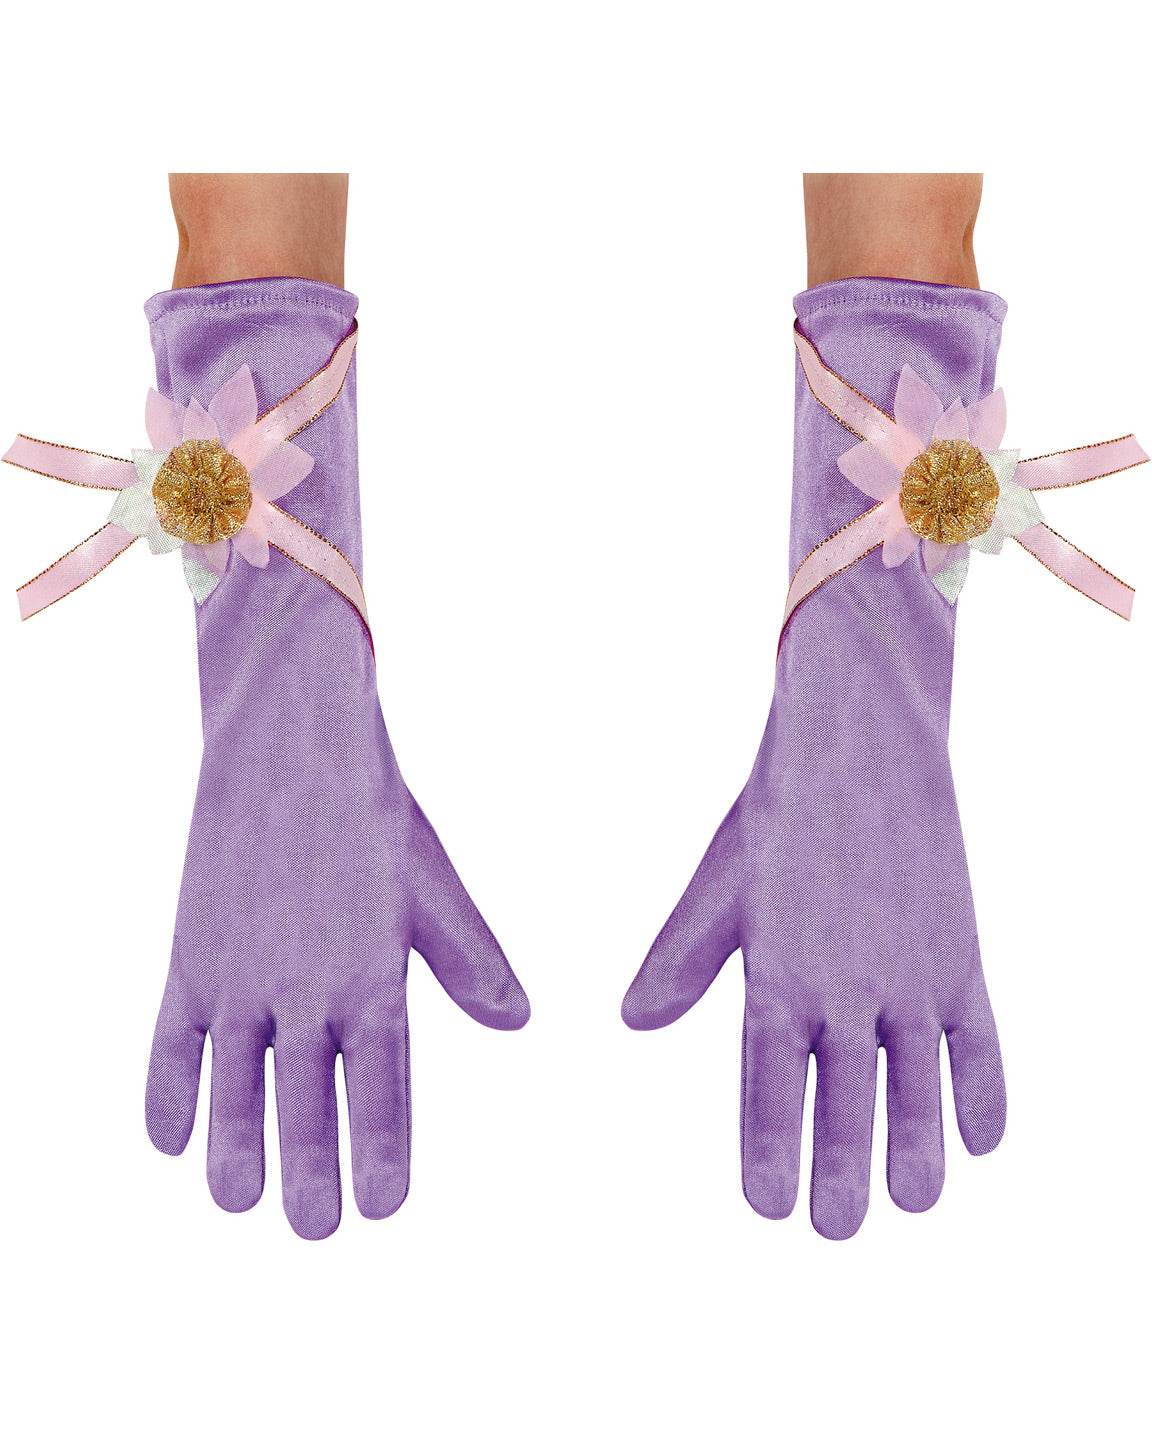 Rapunzel Toddler Gloves